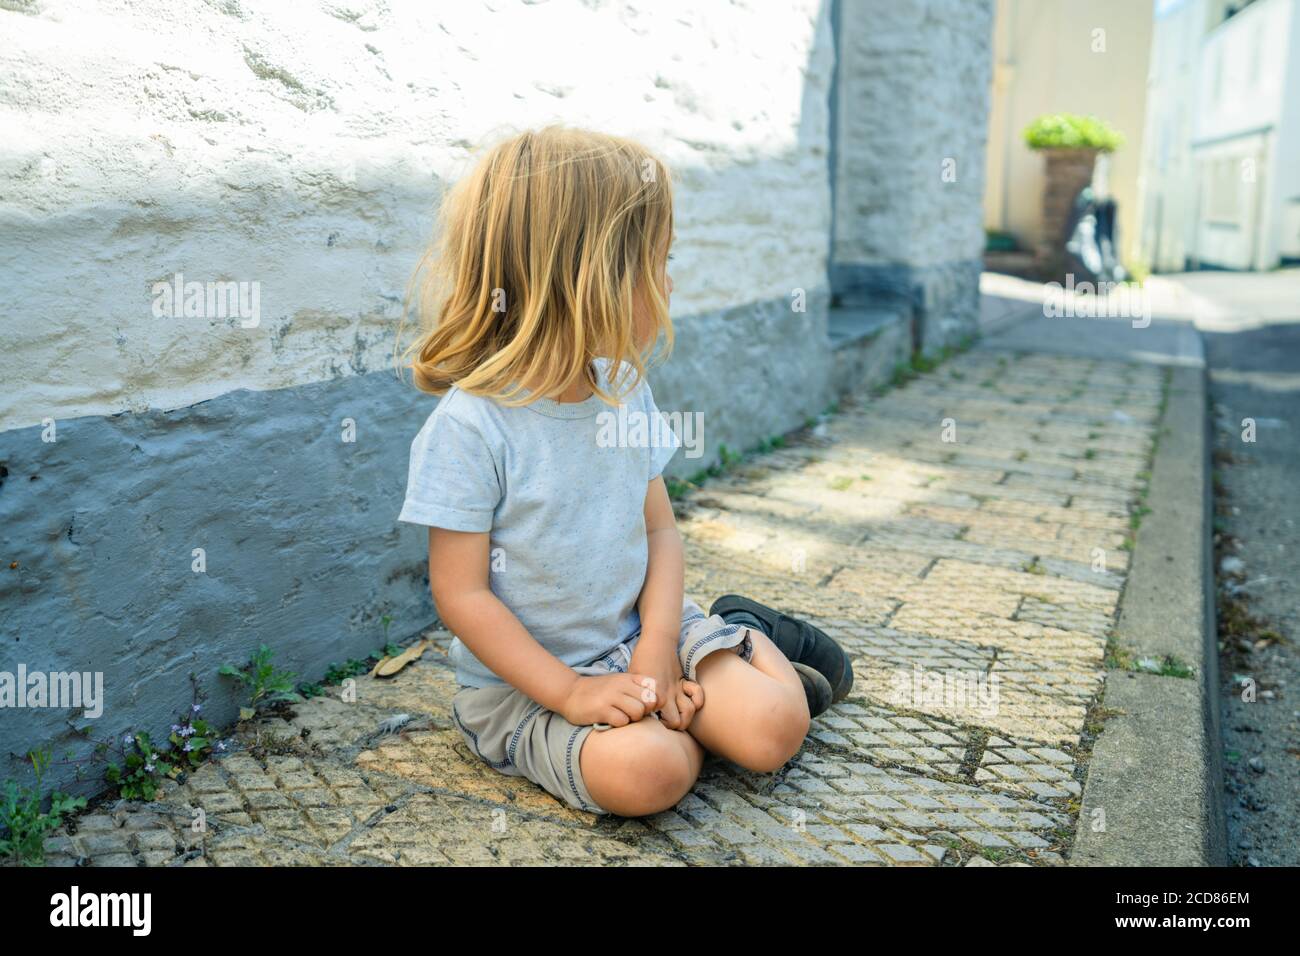 Un petit préchooler est assis sur la chaussée dans un ville Banque D'Images